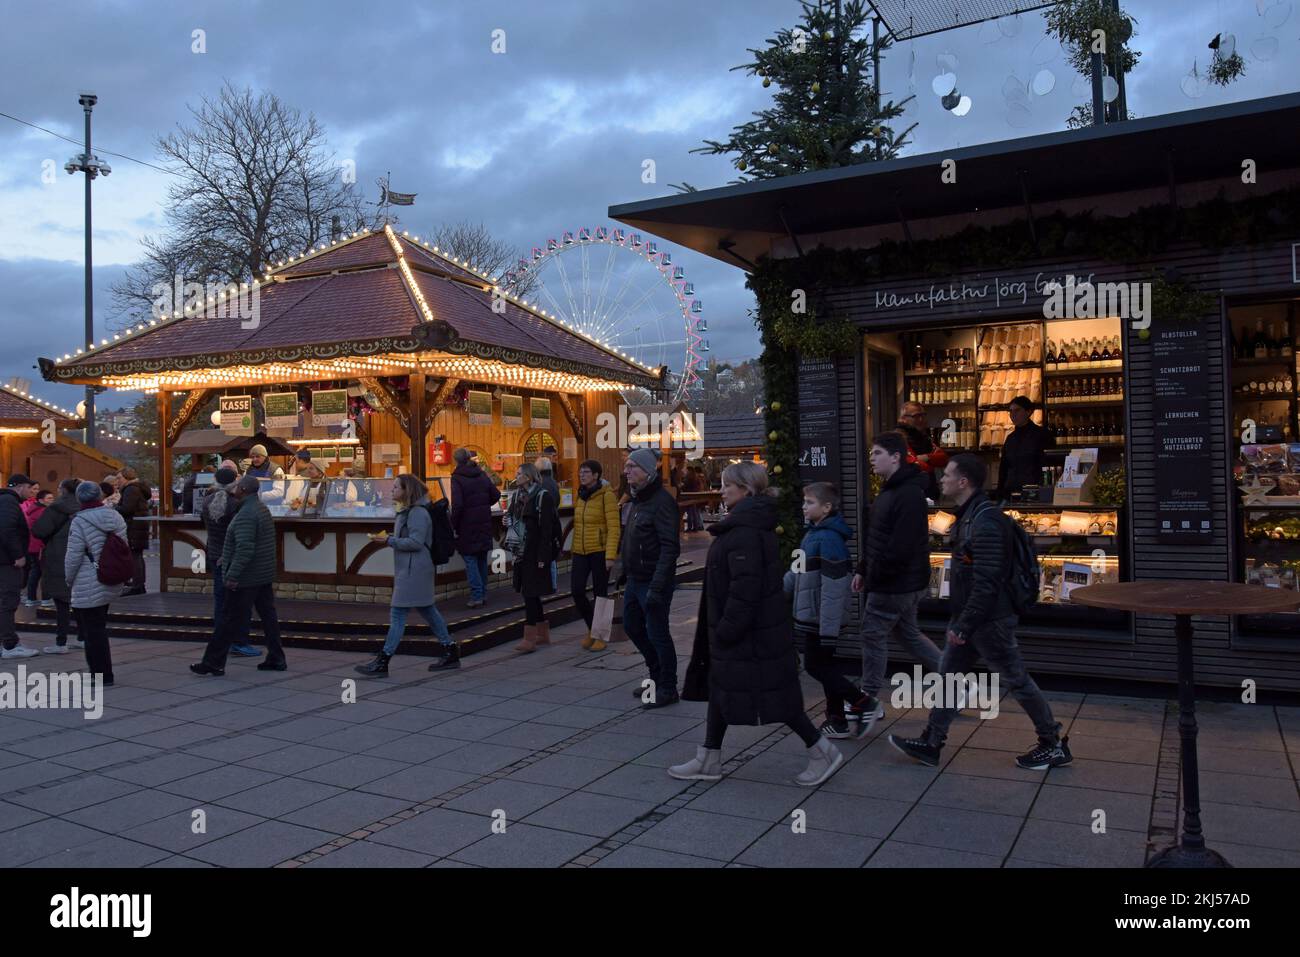 Stoccarda, Germania, 24th novembre 2022. Il mercatino di Natale di Stoccarda è aperto ai visitatori, con 200 bancarelle illuminate e decorate, una fiera e una ferrovia in miniatura. Il mercato è aperto tutti i giorni fino al 23rd dicembre. G.P.Essex/Alamy Live News Foto Stock